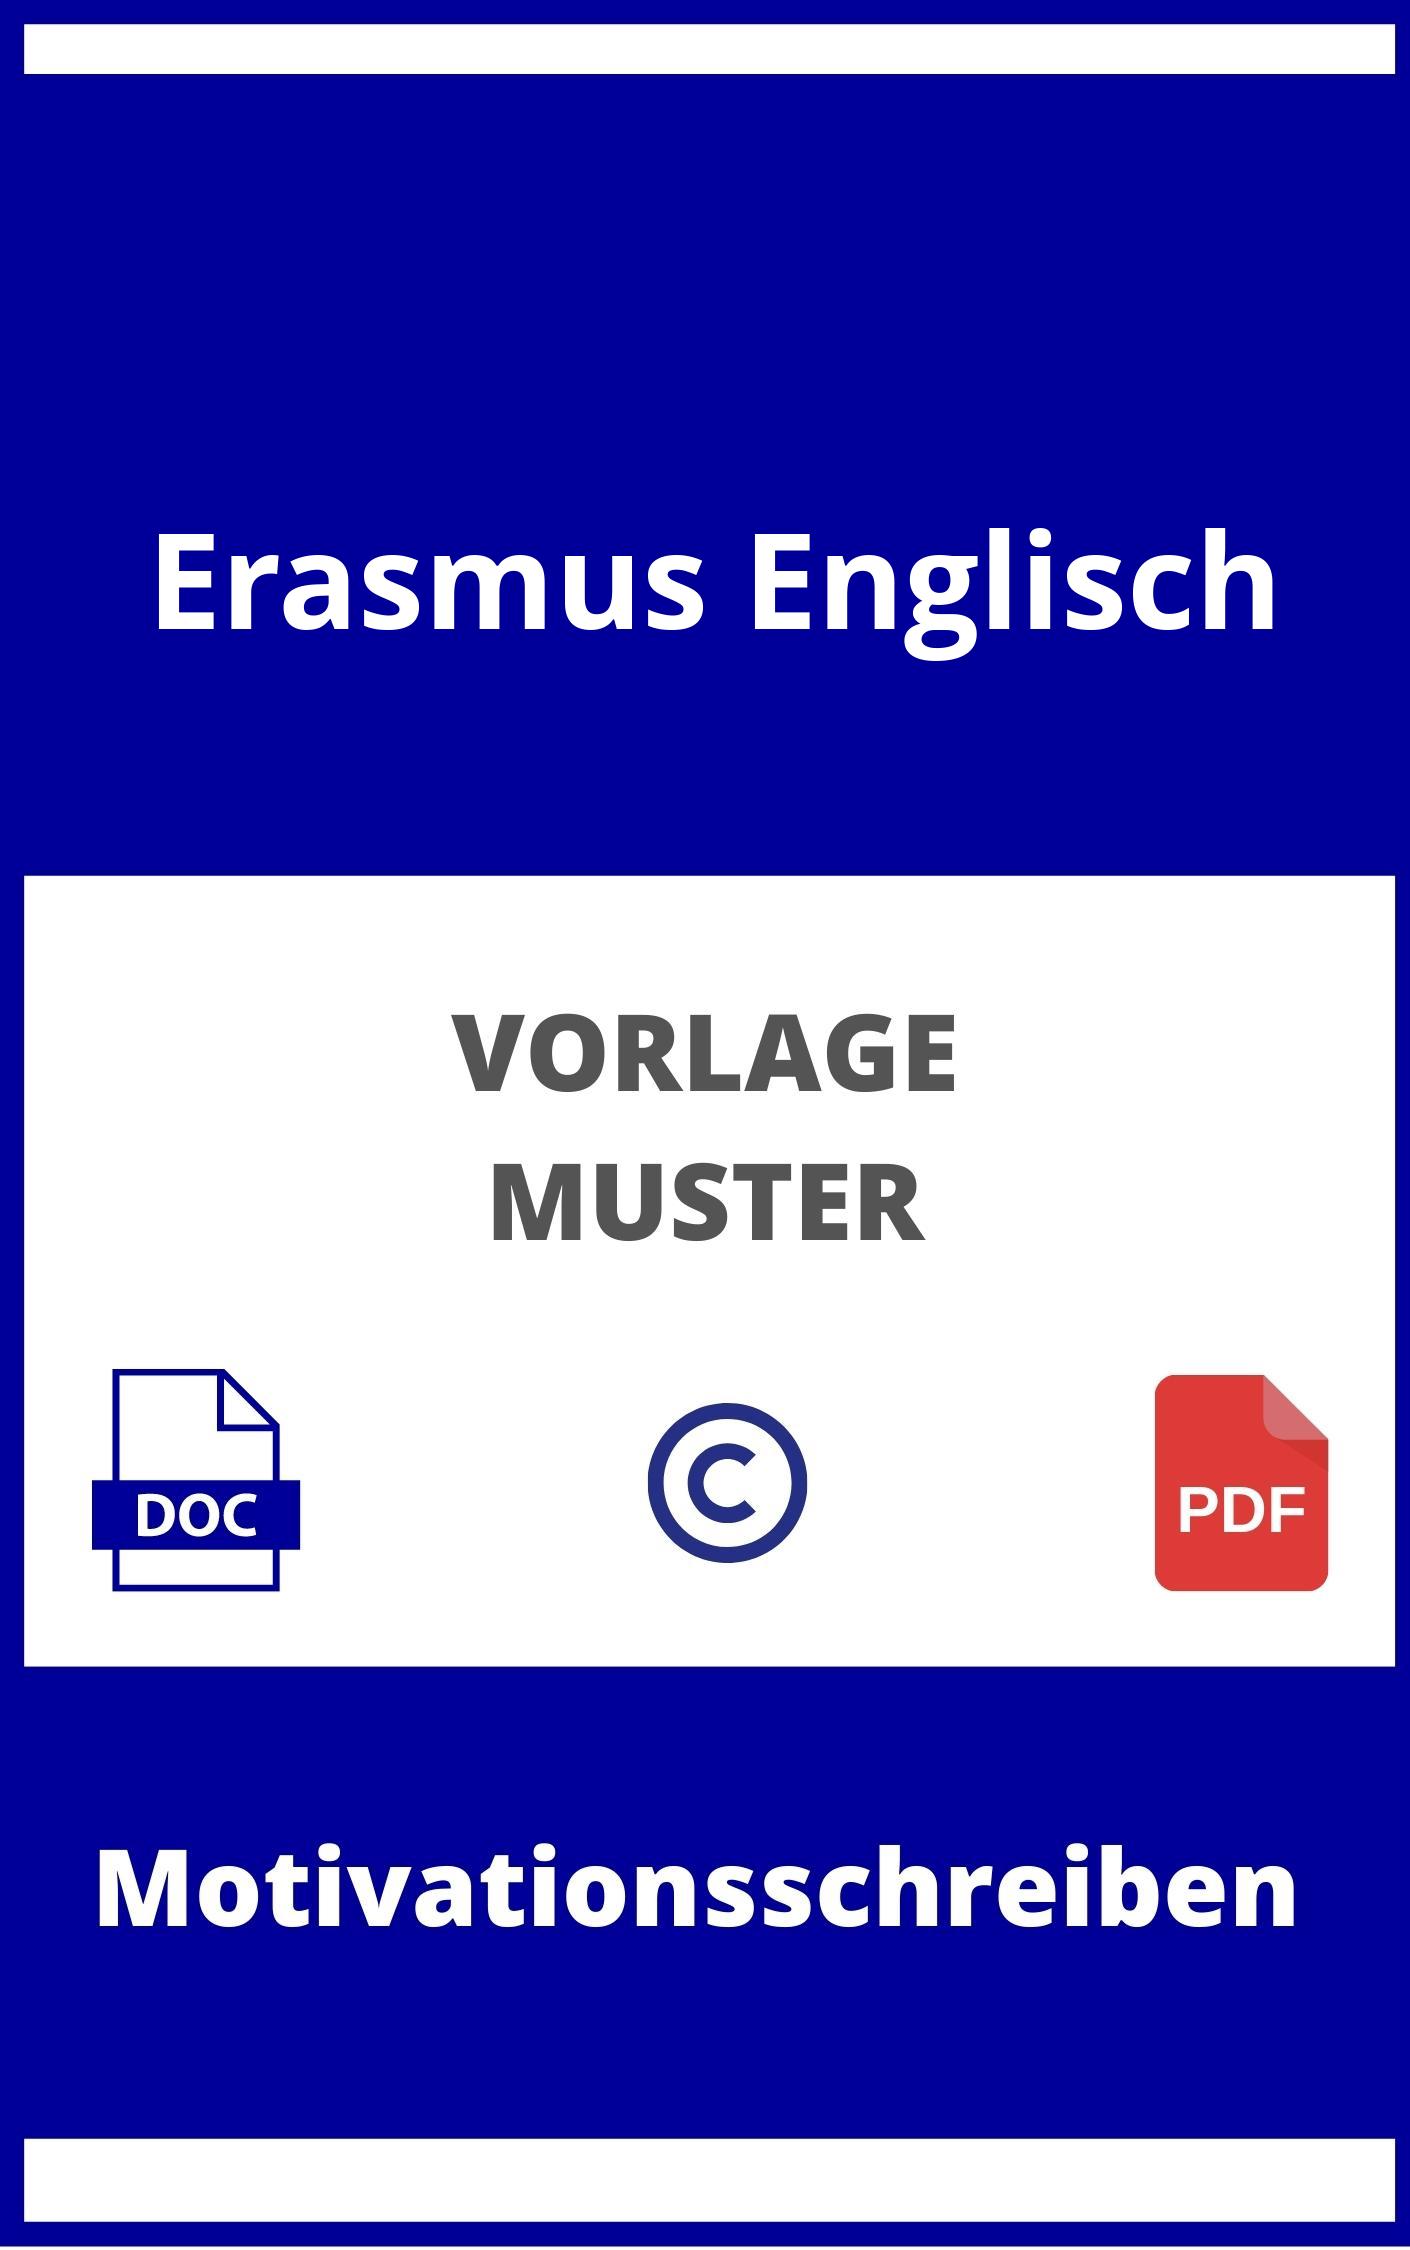 Motivationsschreiben Erasmus Englisch